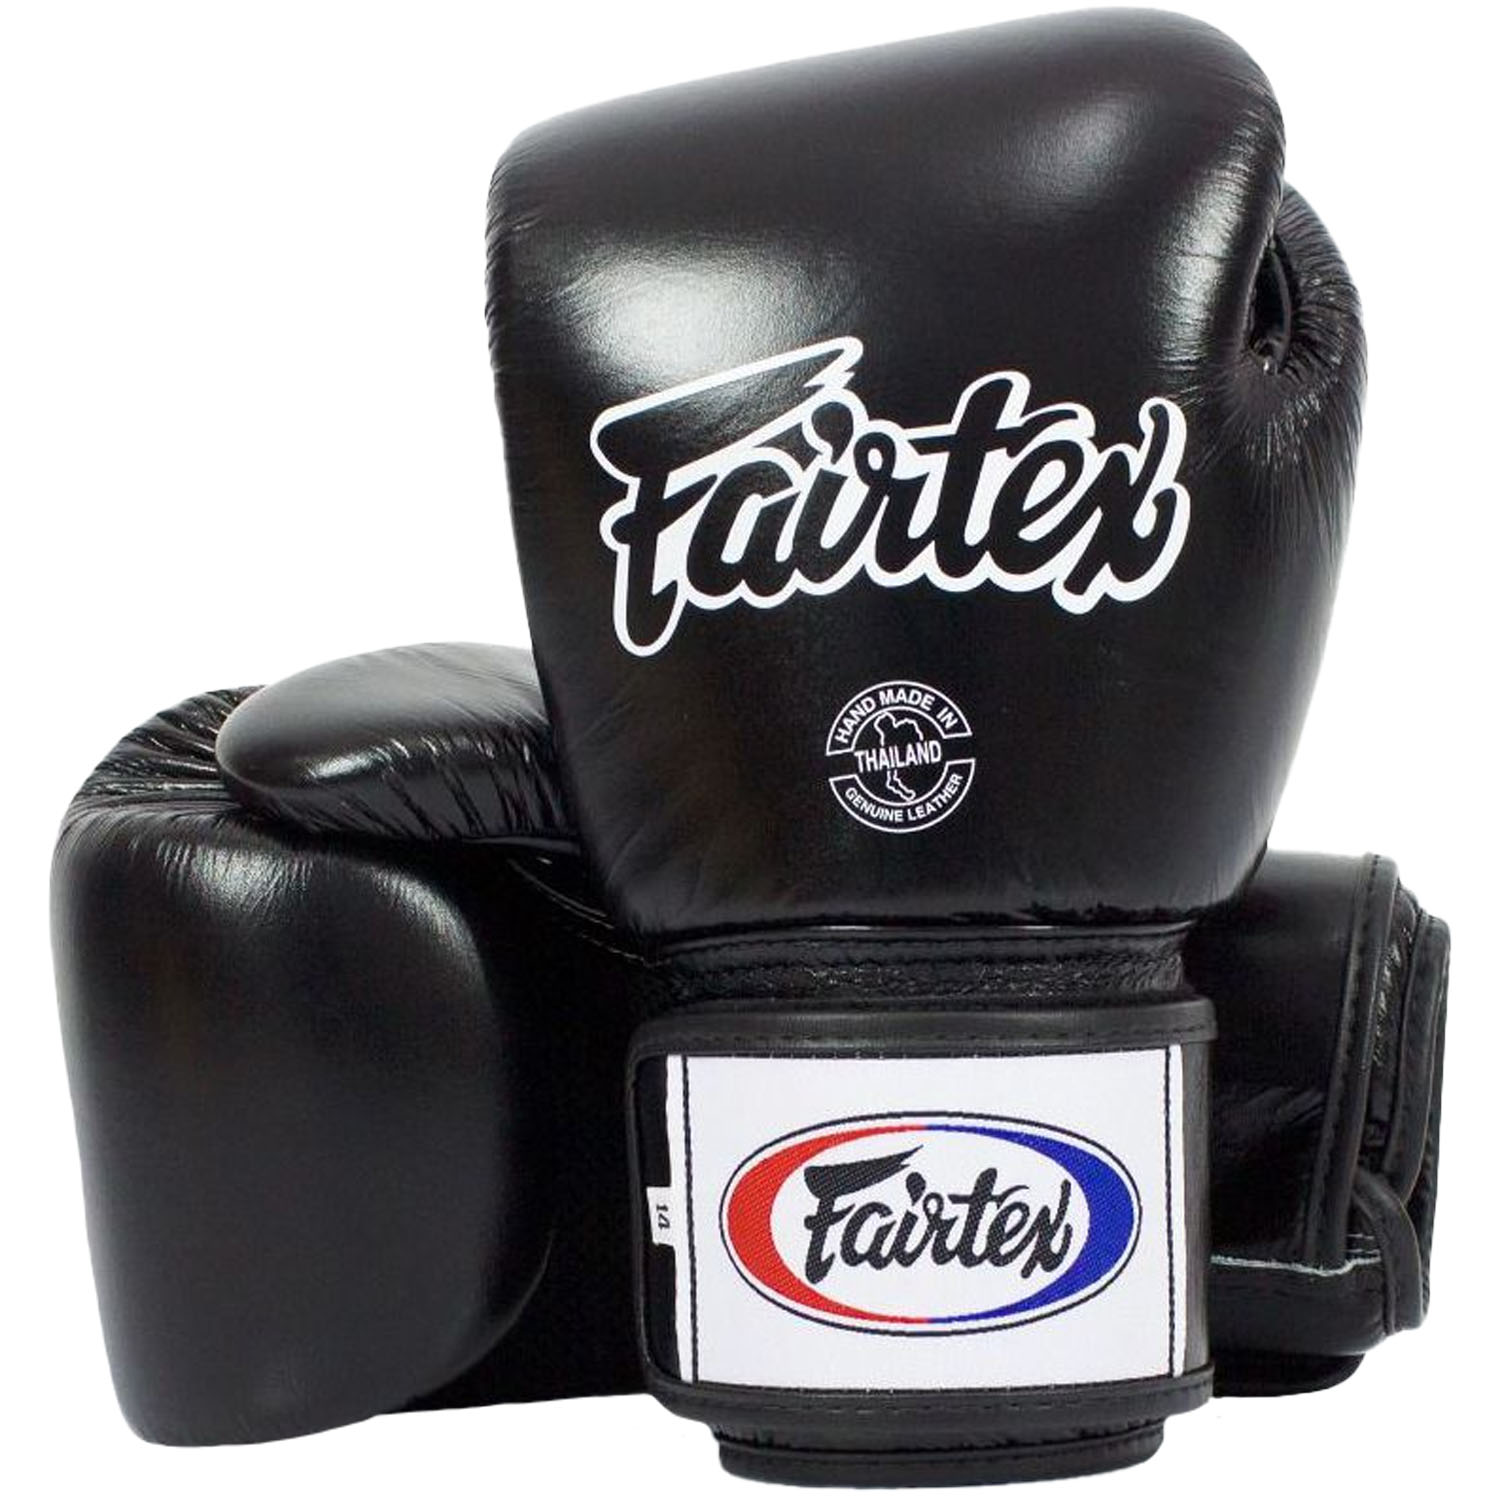 Fairtex Boxing Gloves, BGV1 AIR, black, 10 Oz